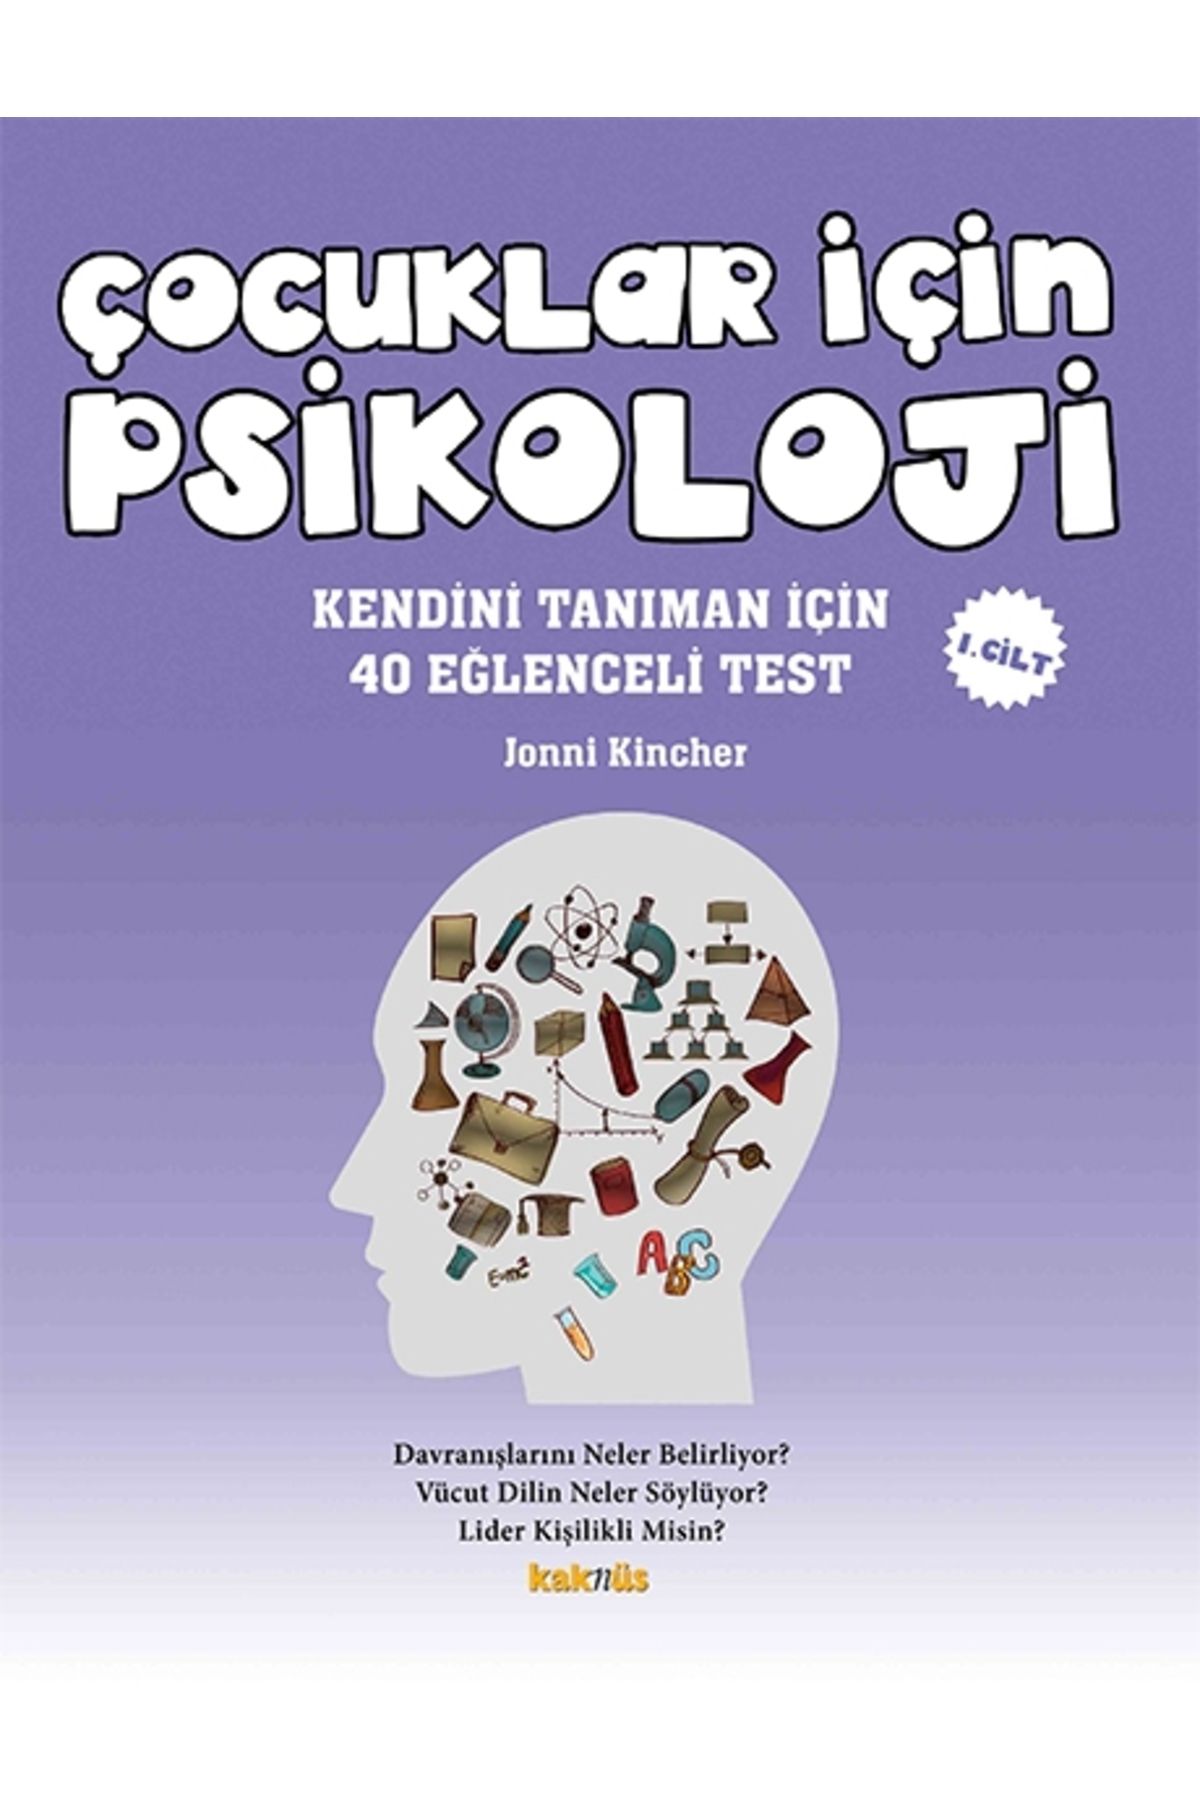 Genel Markalar Çocuklar Için Psikoloji 1.cilt - Kendini Tanıman Için 40 Eğlenceli Test